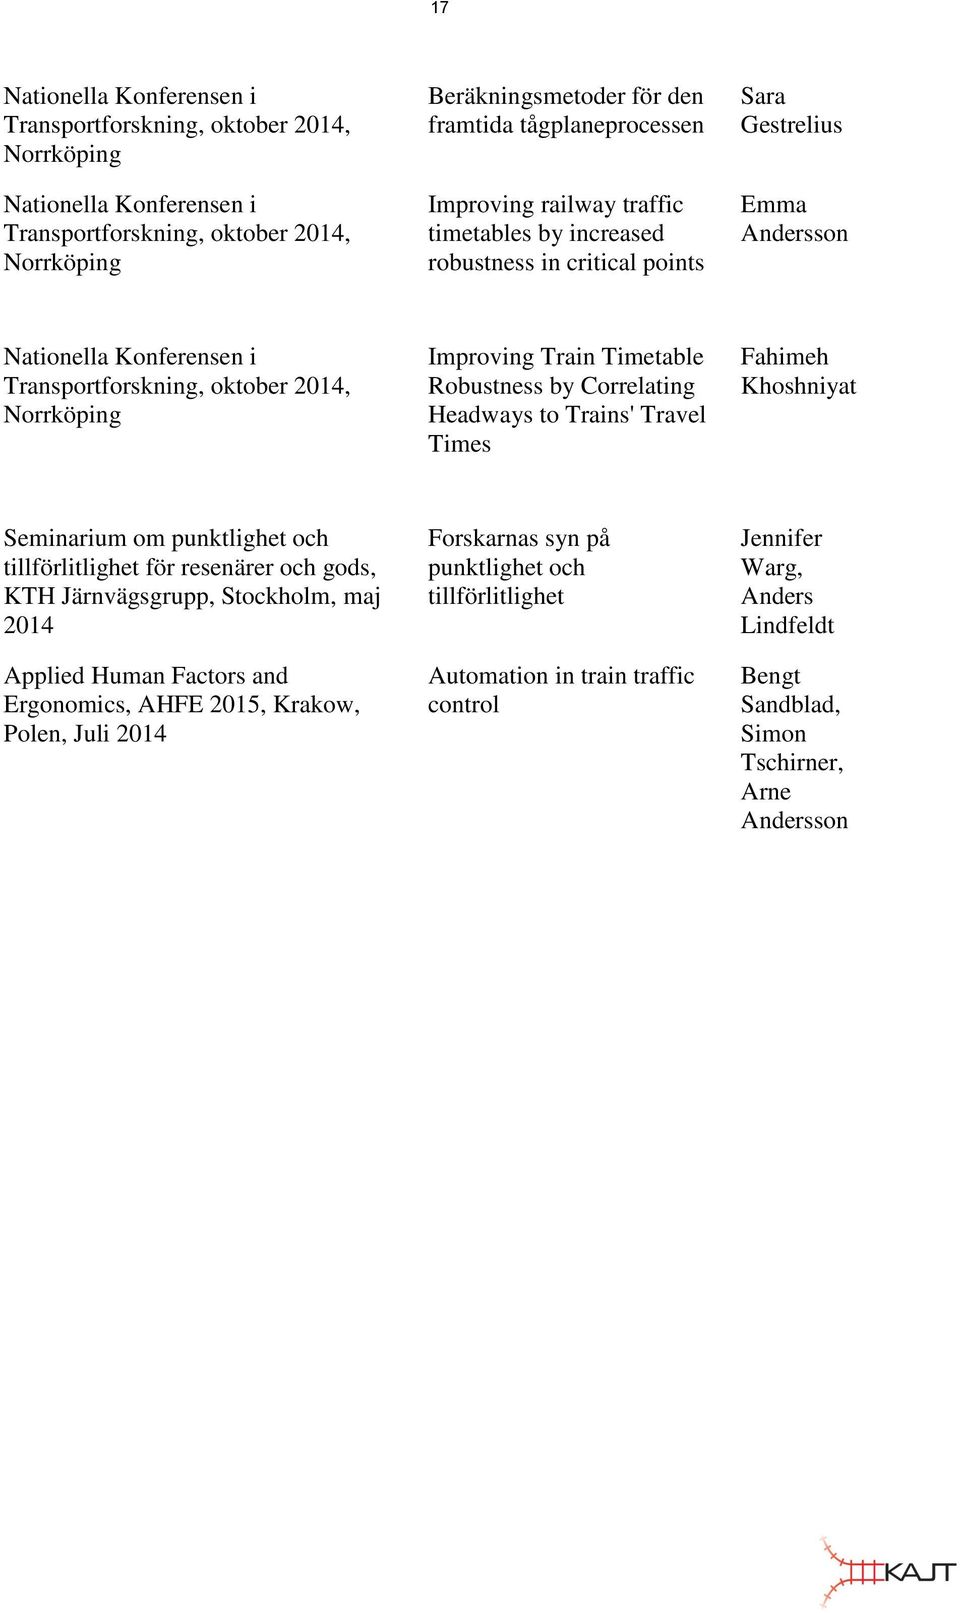 Timetable Robustness by Correlating Headways to Trains' Travel Times Fahimeh Khoshniyat Seminarium om punktlighet och tillförlitlighet för resenärer och gods, KTH Järnvägsgrupp, Stockholm, maj 2014